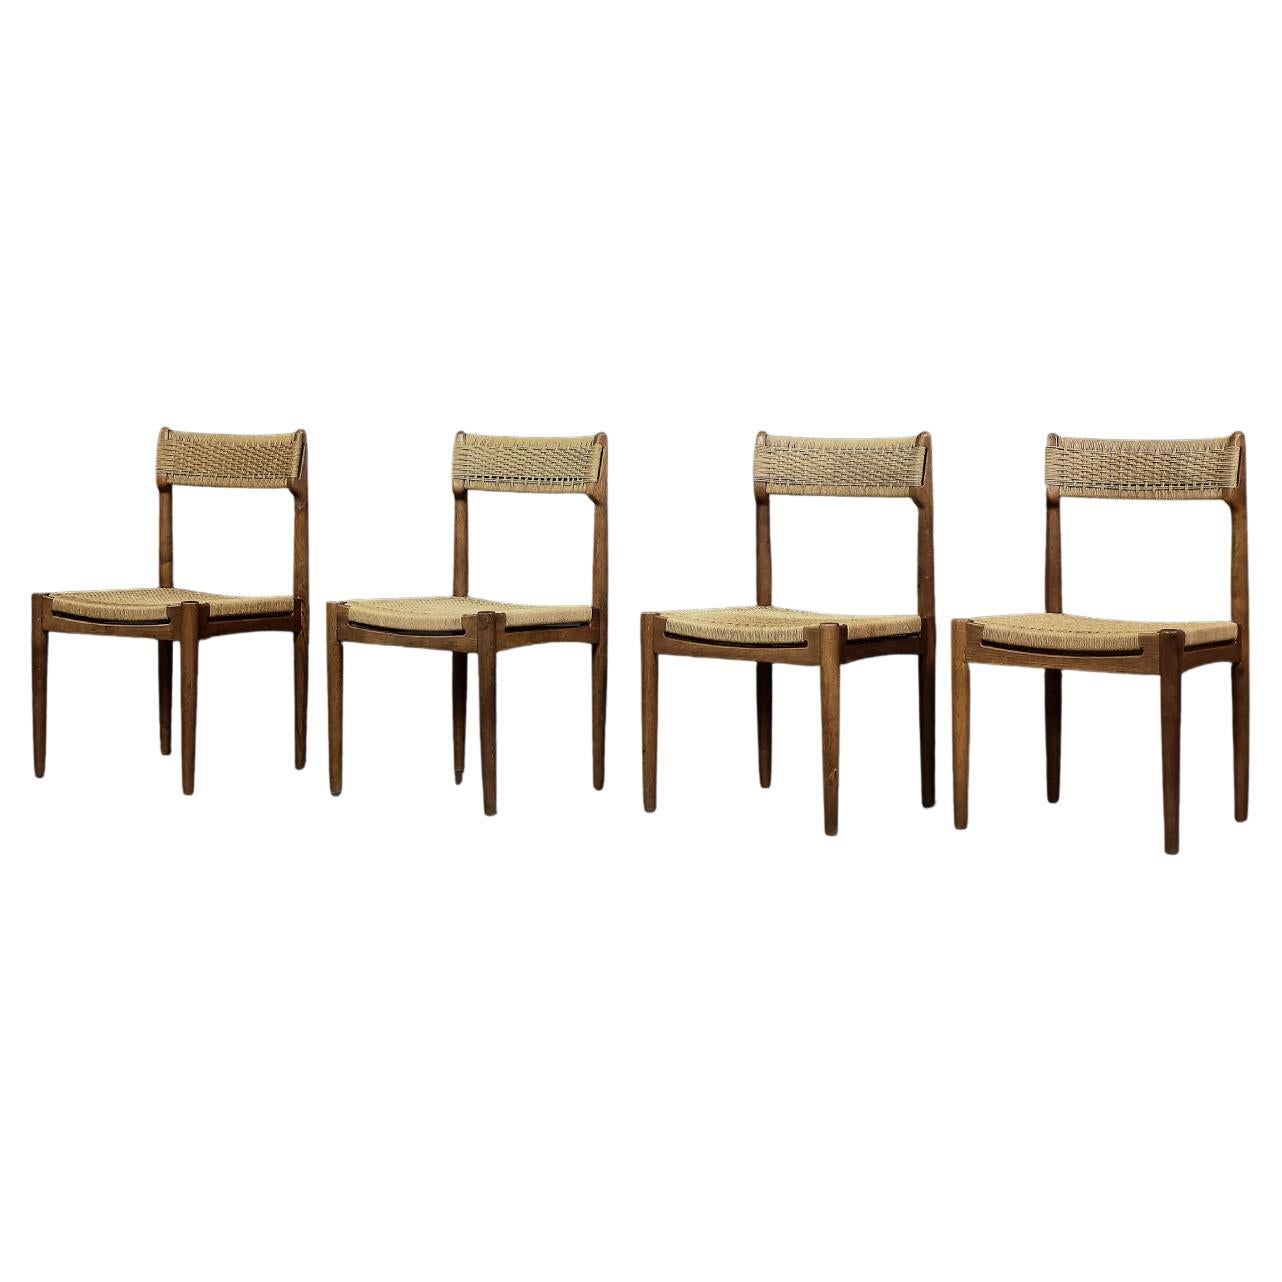 Satz von 4 skandinavischen Vintage-Esszimmerstühlen aus Eiche und Papierkordel, Mid-Century Modern